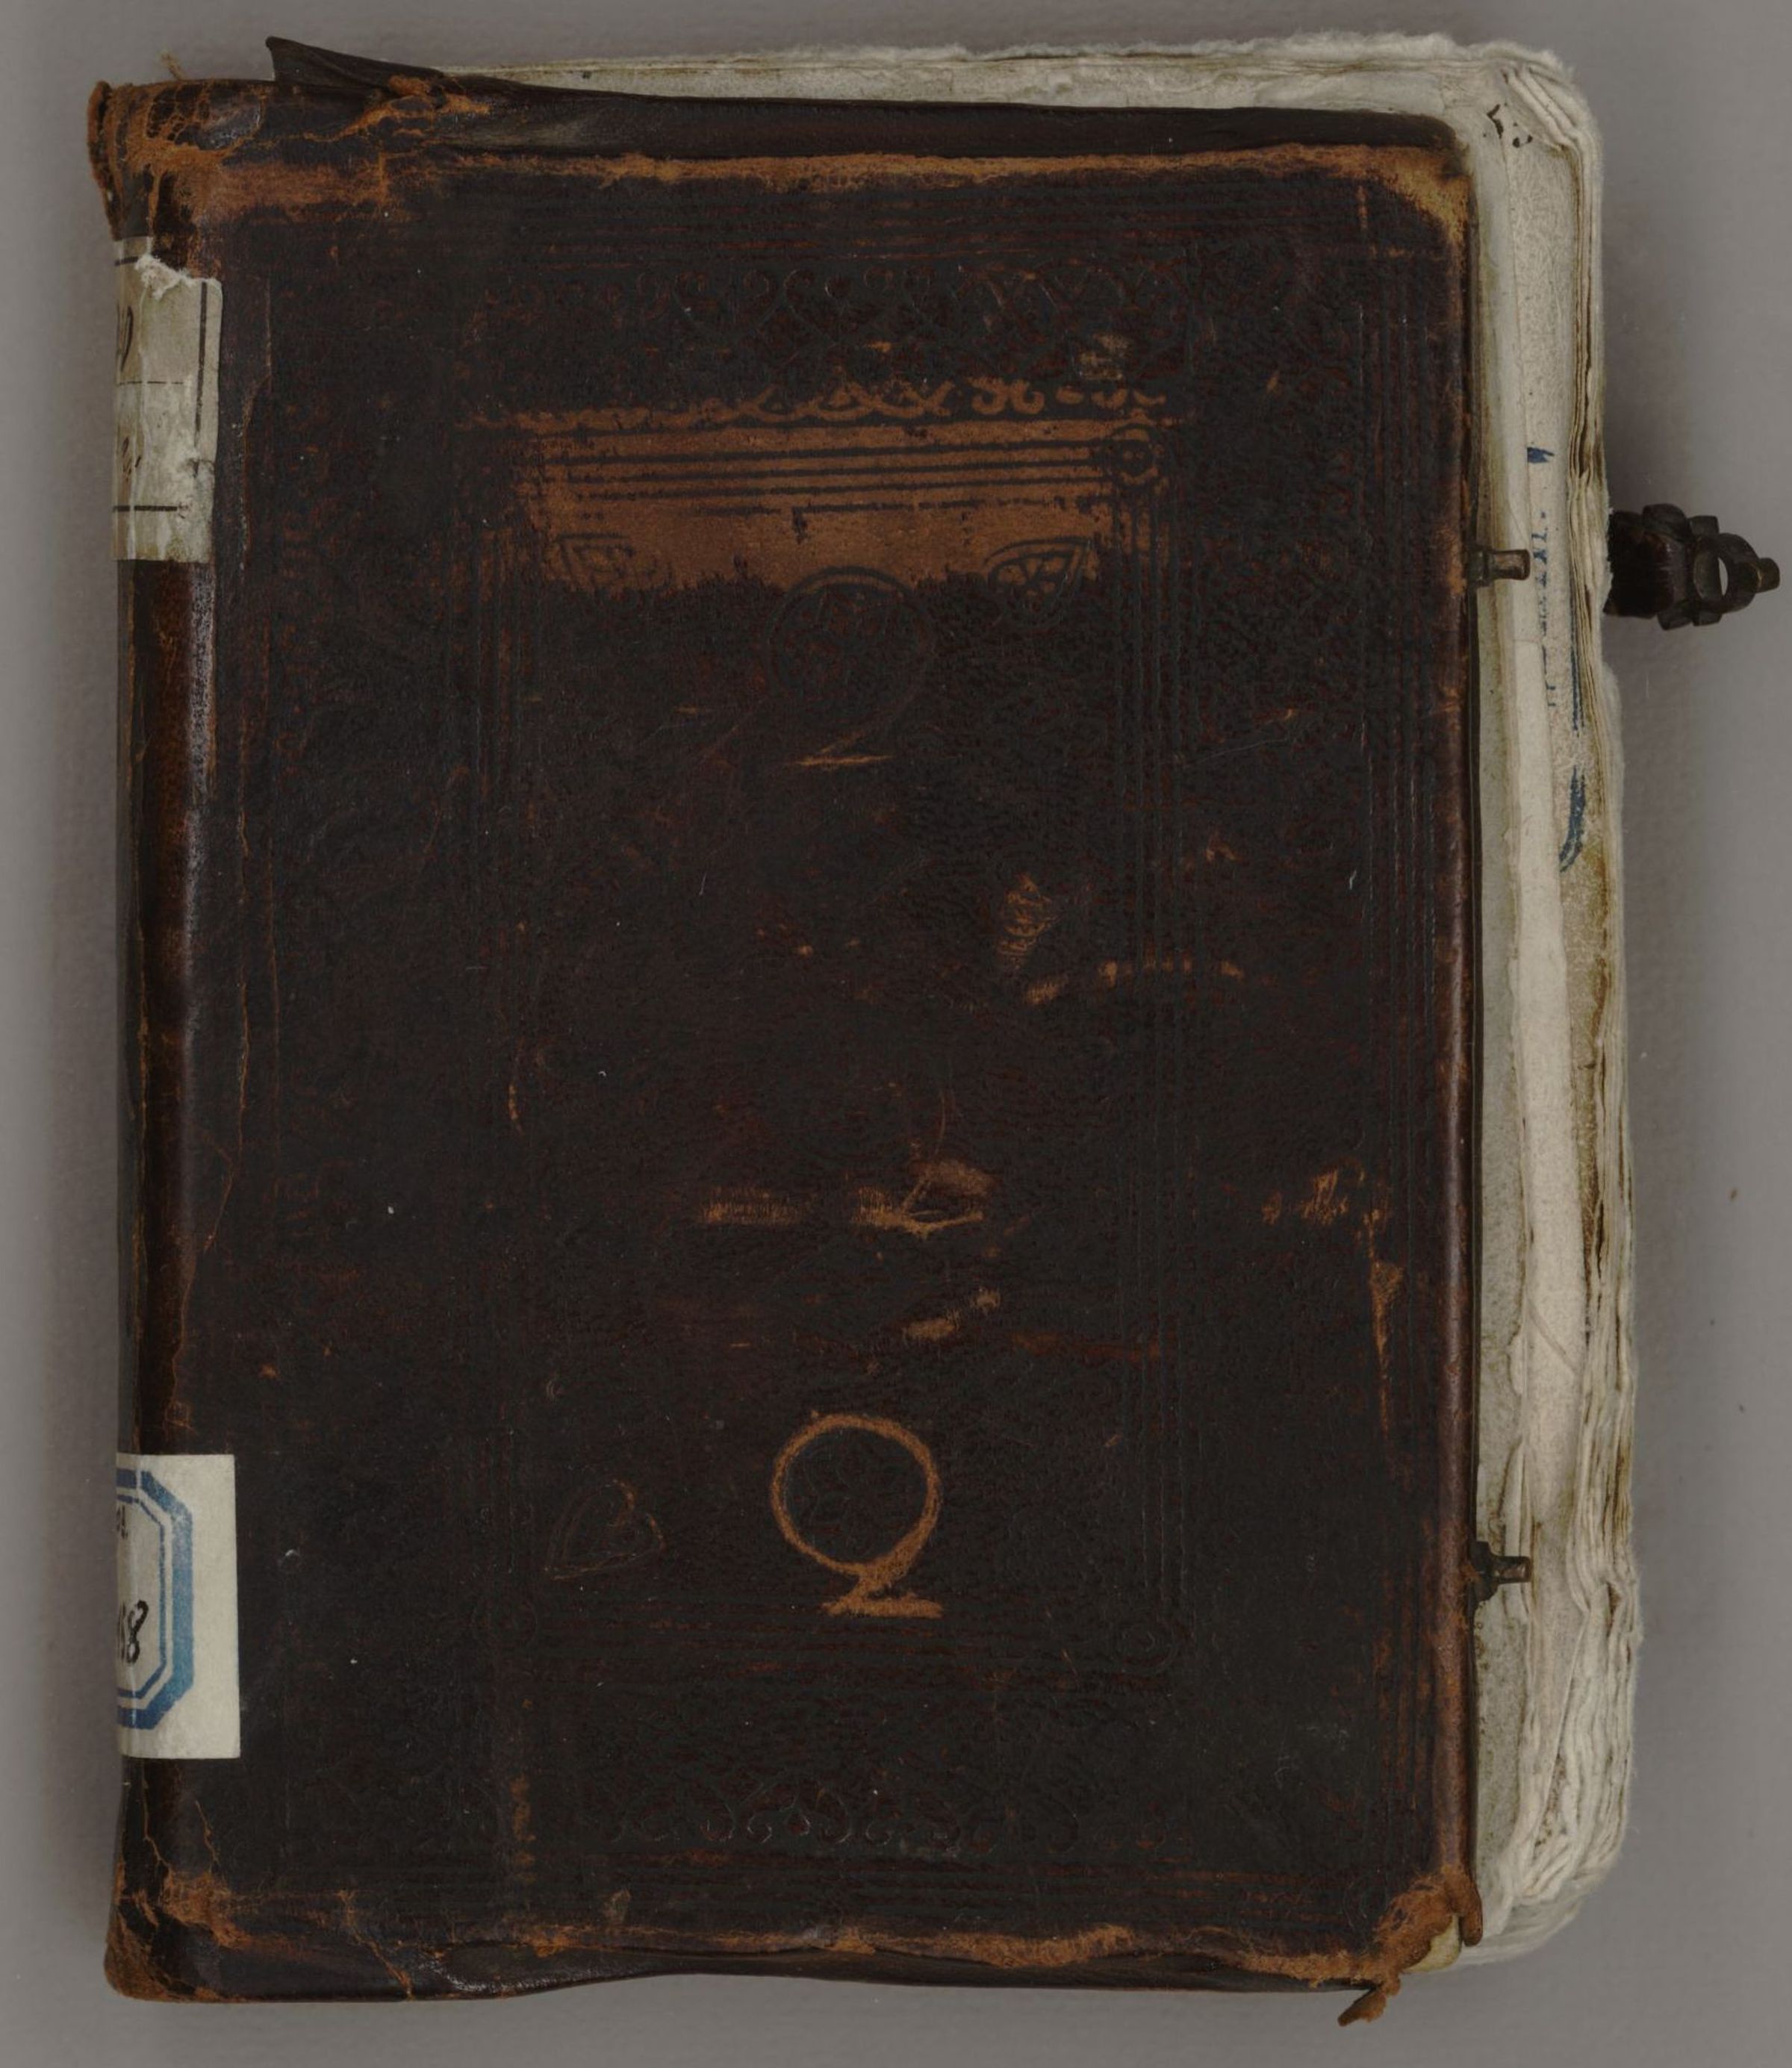 Первая л четвертая а. Верхняя крышка книги. Библия 16 века Московского скриптория. Старая электронная книга с крышками.